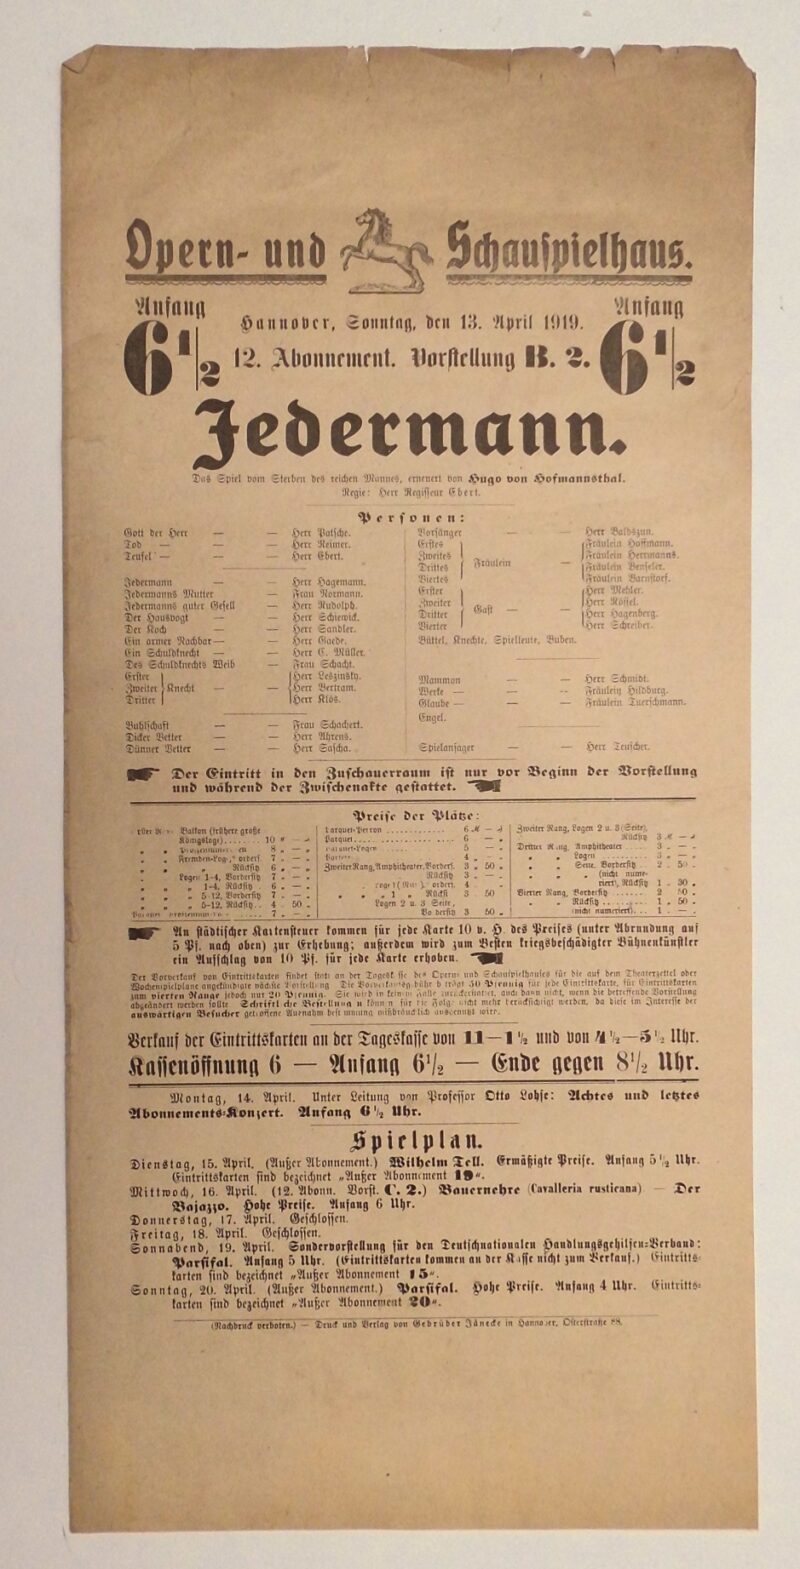 Abbildung 1: „Original-Theaterzettel: Jedermann“ von Opern- und Schauspielhaus Hannover